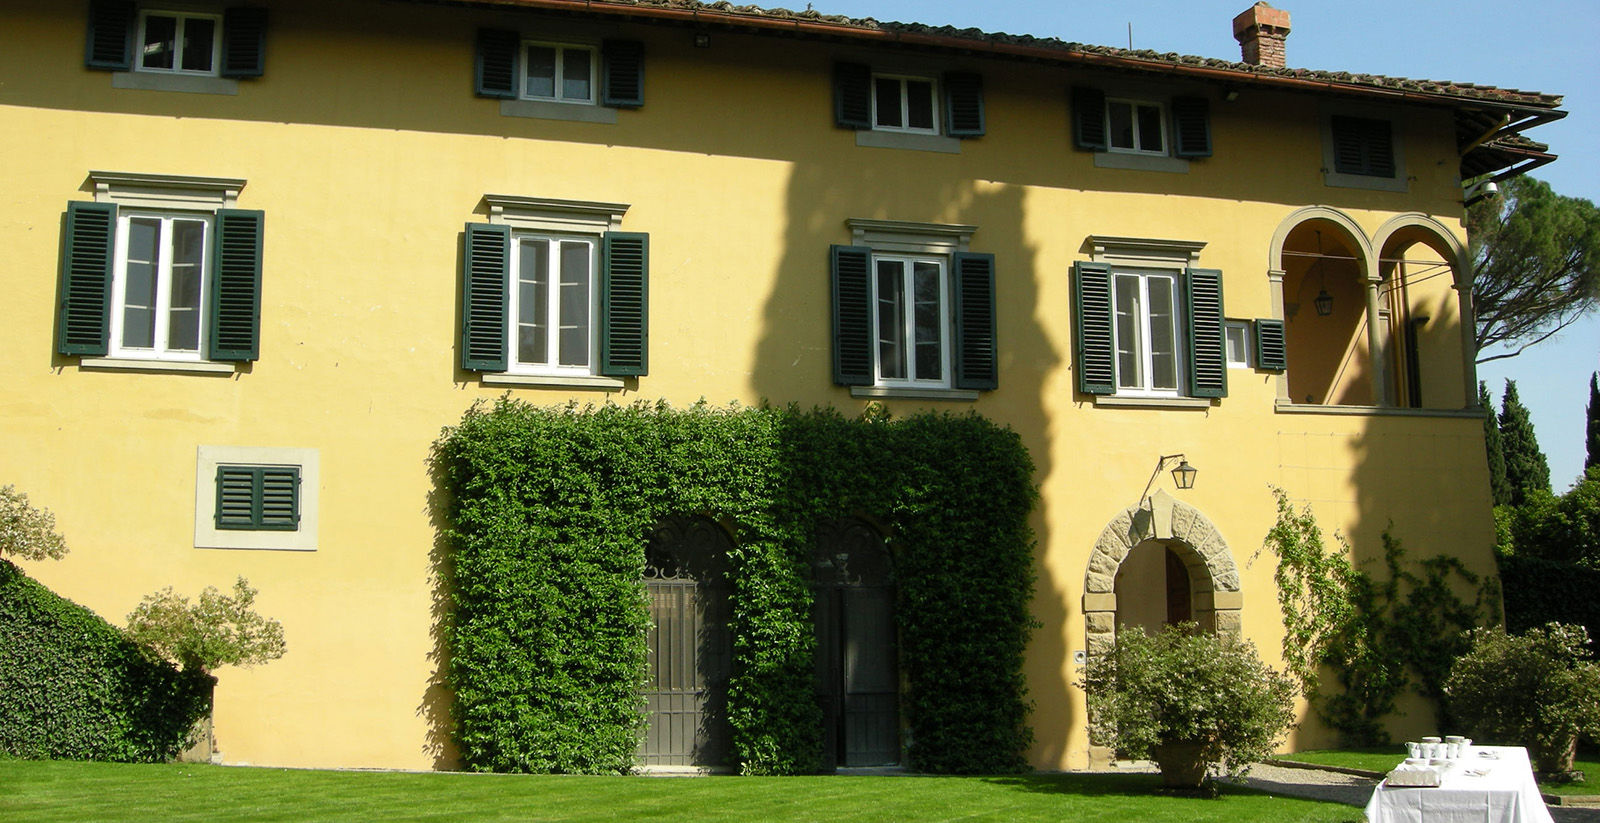 Villa "I Tatti" in Fiesole: temple of art, culture and history 1